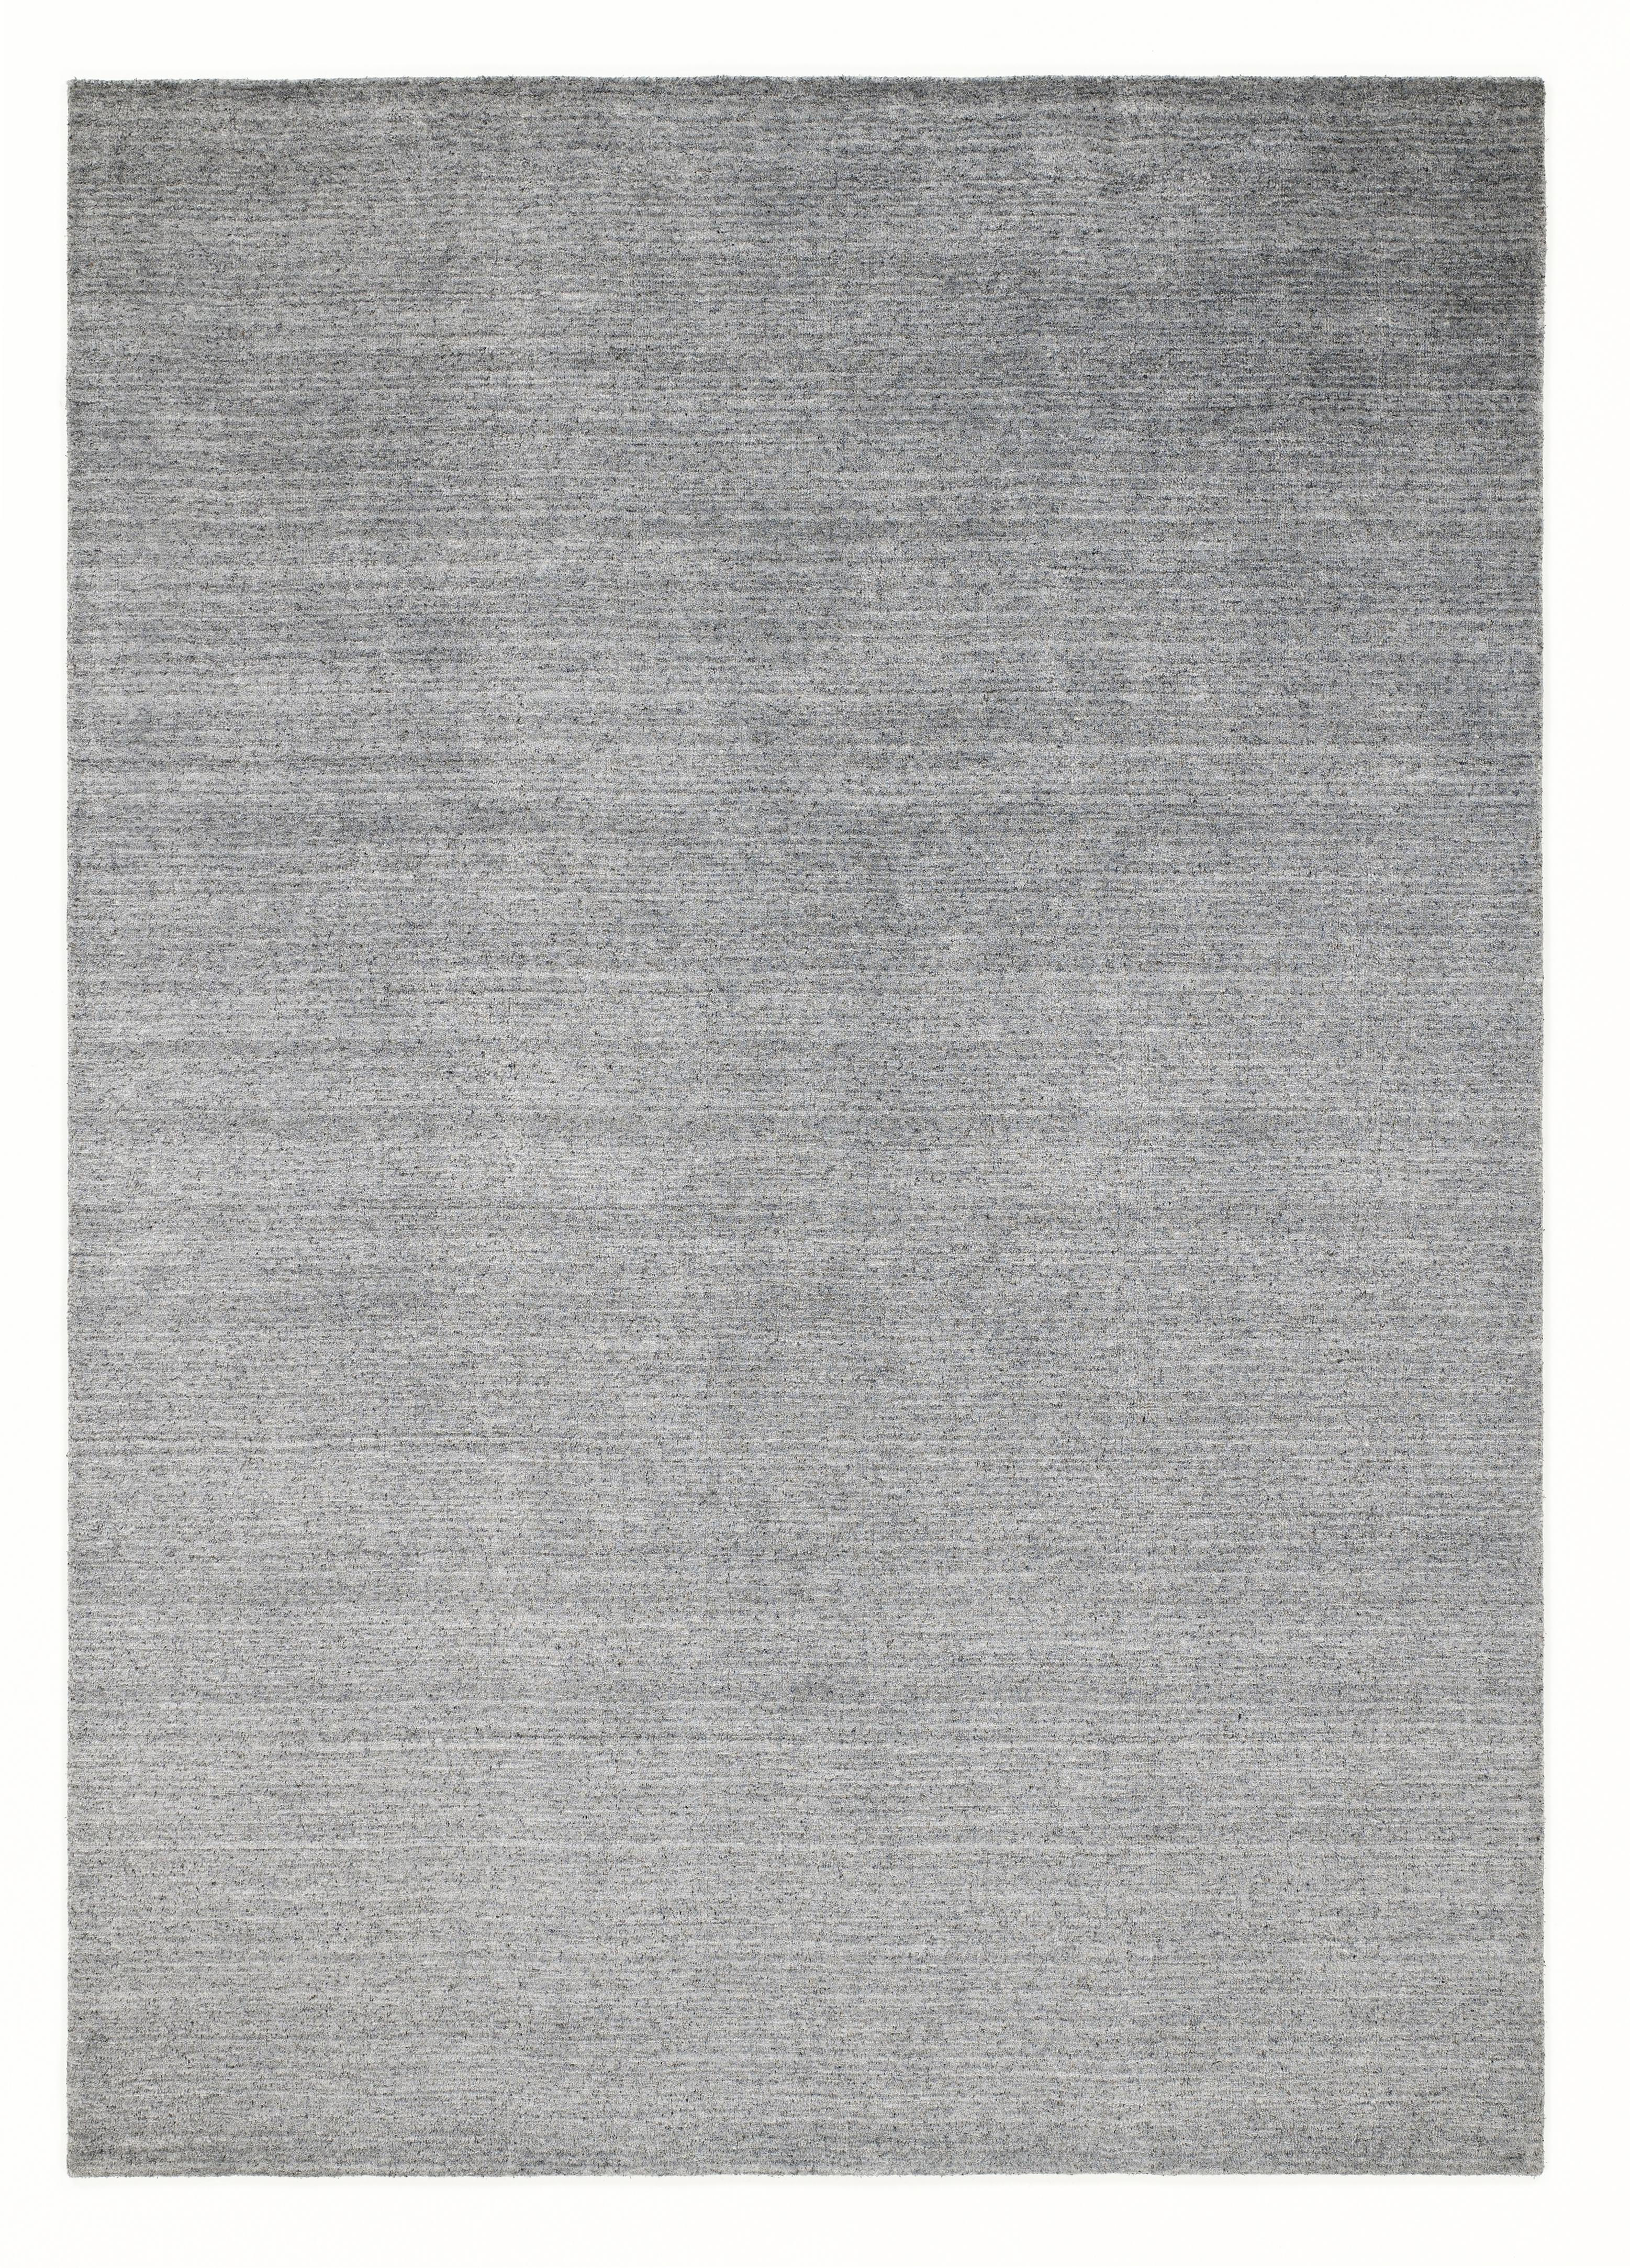 ORIENTTEPPICH 70/140 cm Malibu  - Silberfarben, KONVENTIONELL, Textil (70/140cm) - Musterring